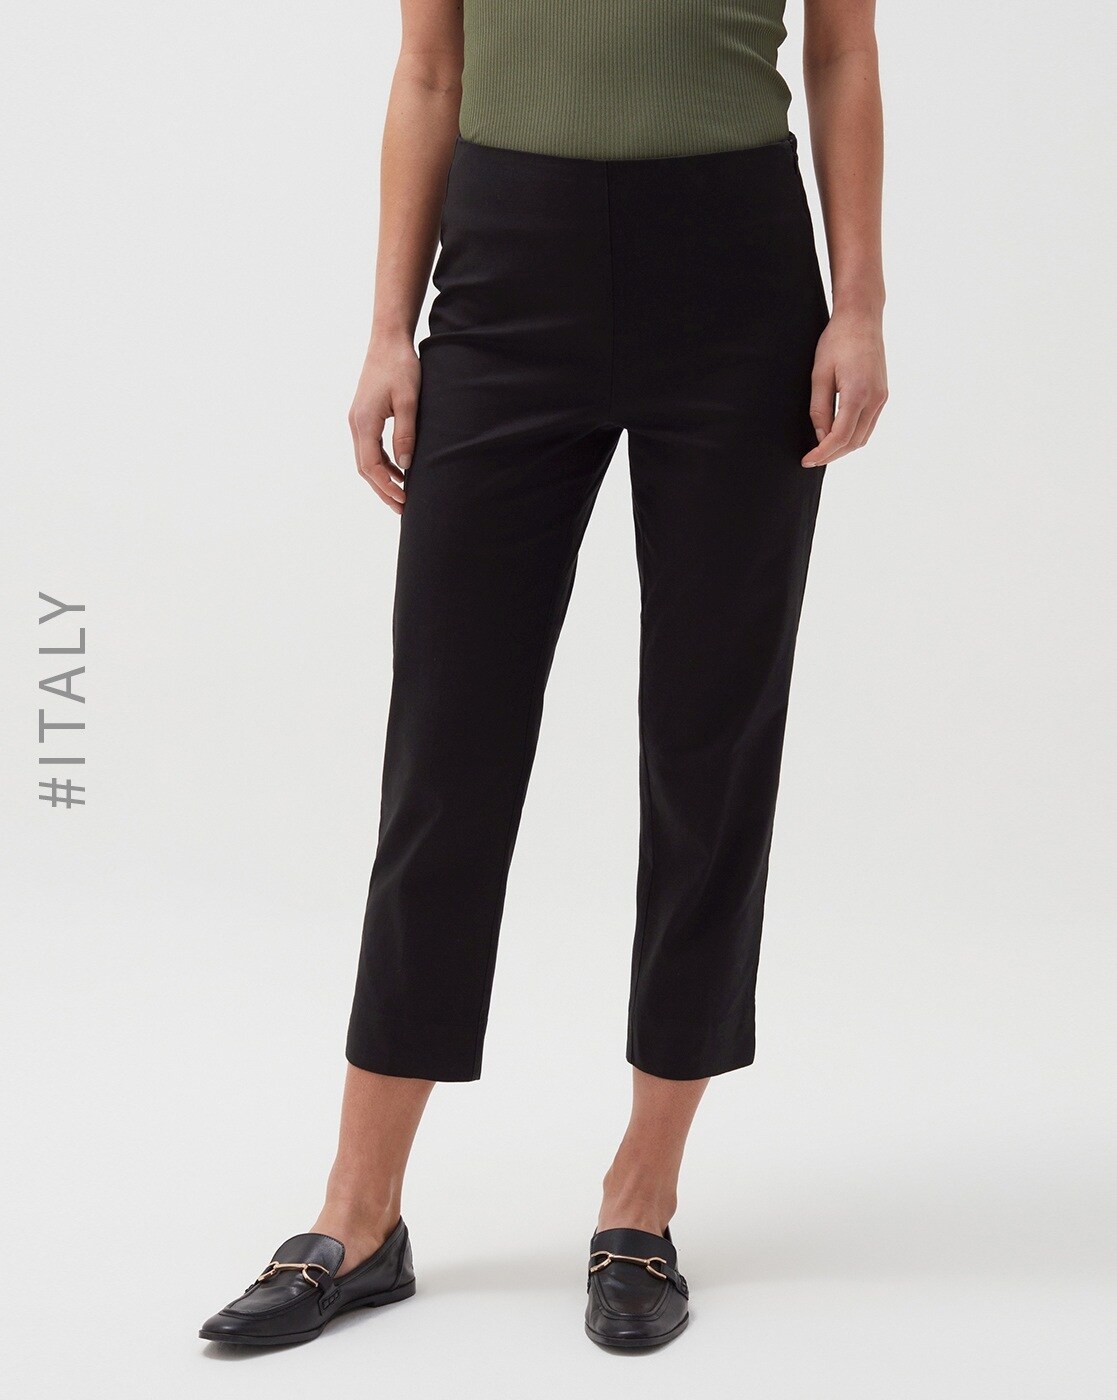 Buy Black Trousers  Pants for Women by OVS Online  Ajiocom